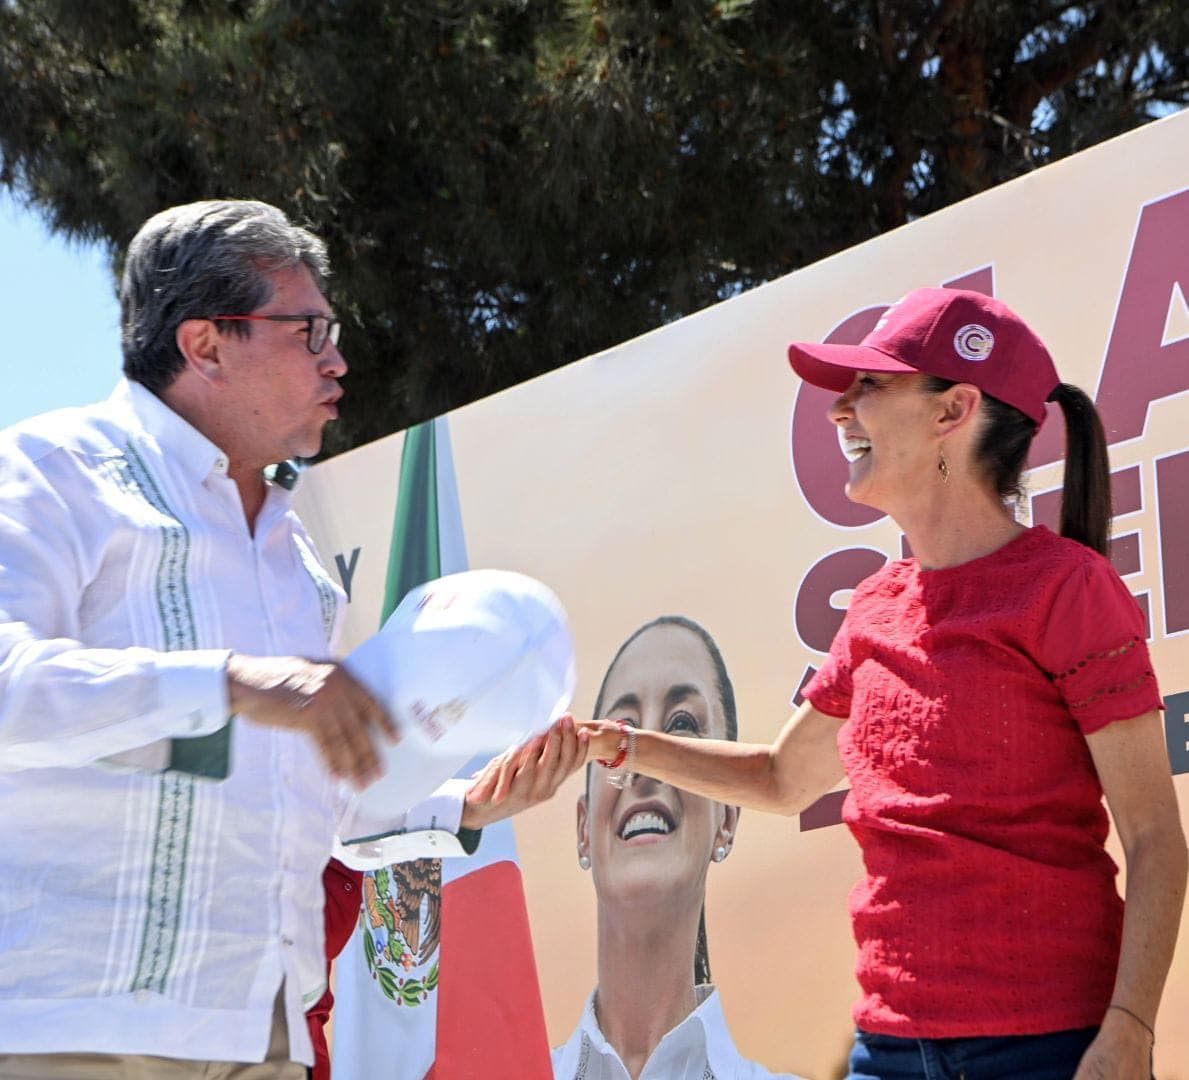 La Ciudad de México debe mantener el respeto a los derechos y libertades: Ricardo Monreal